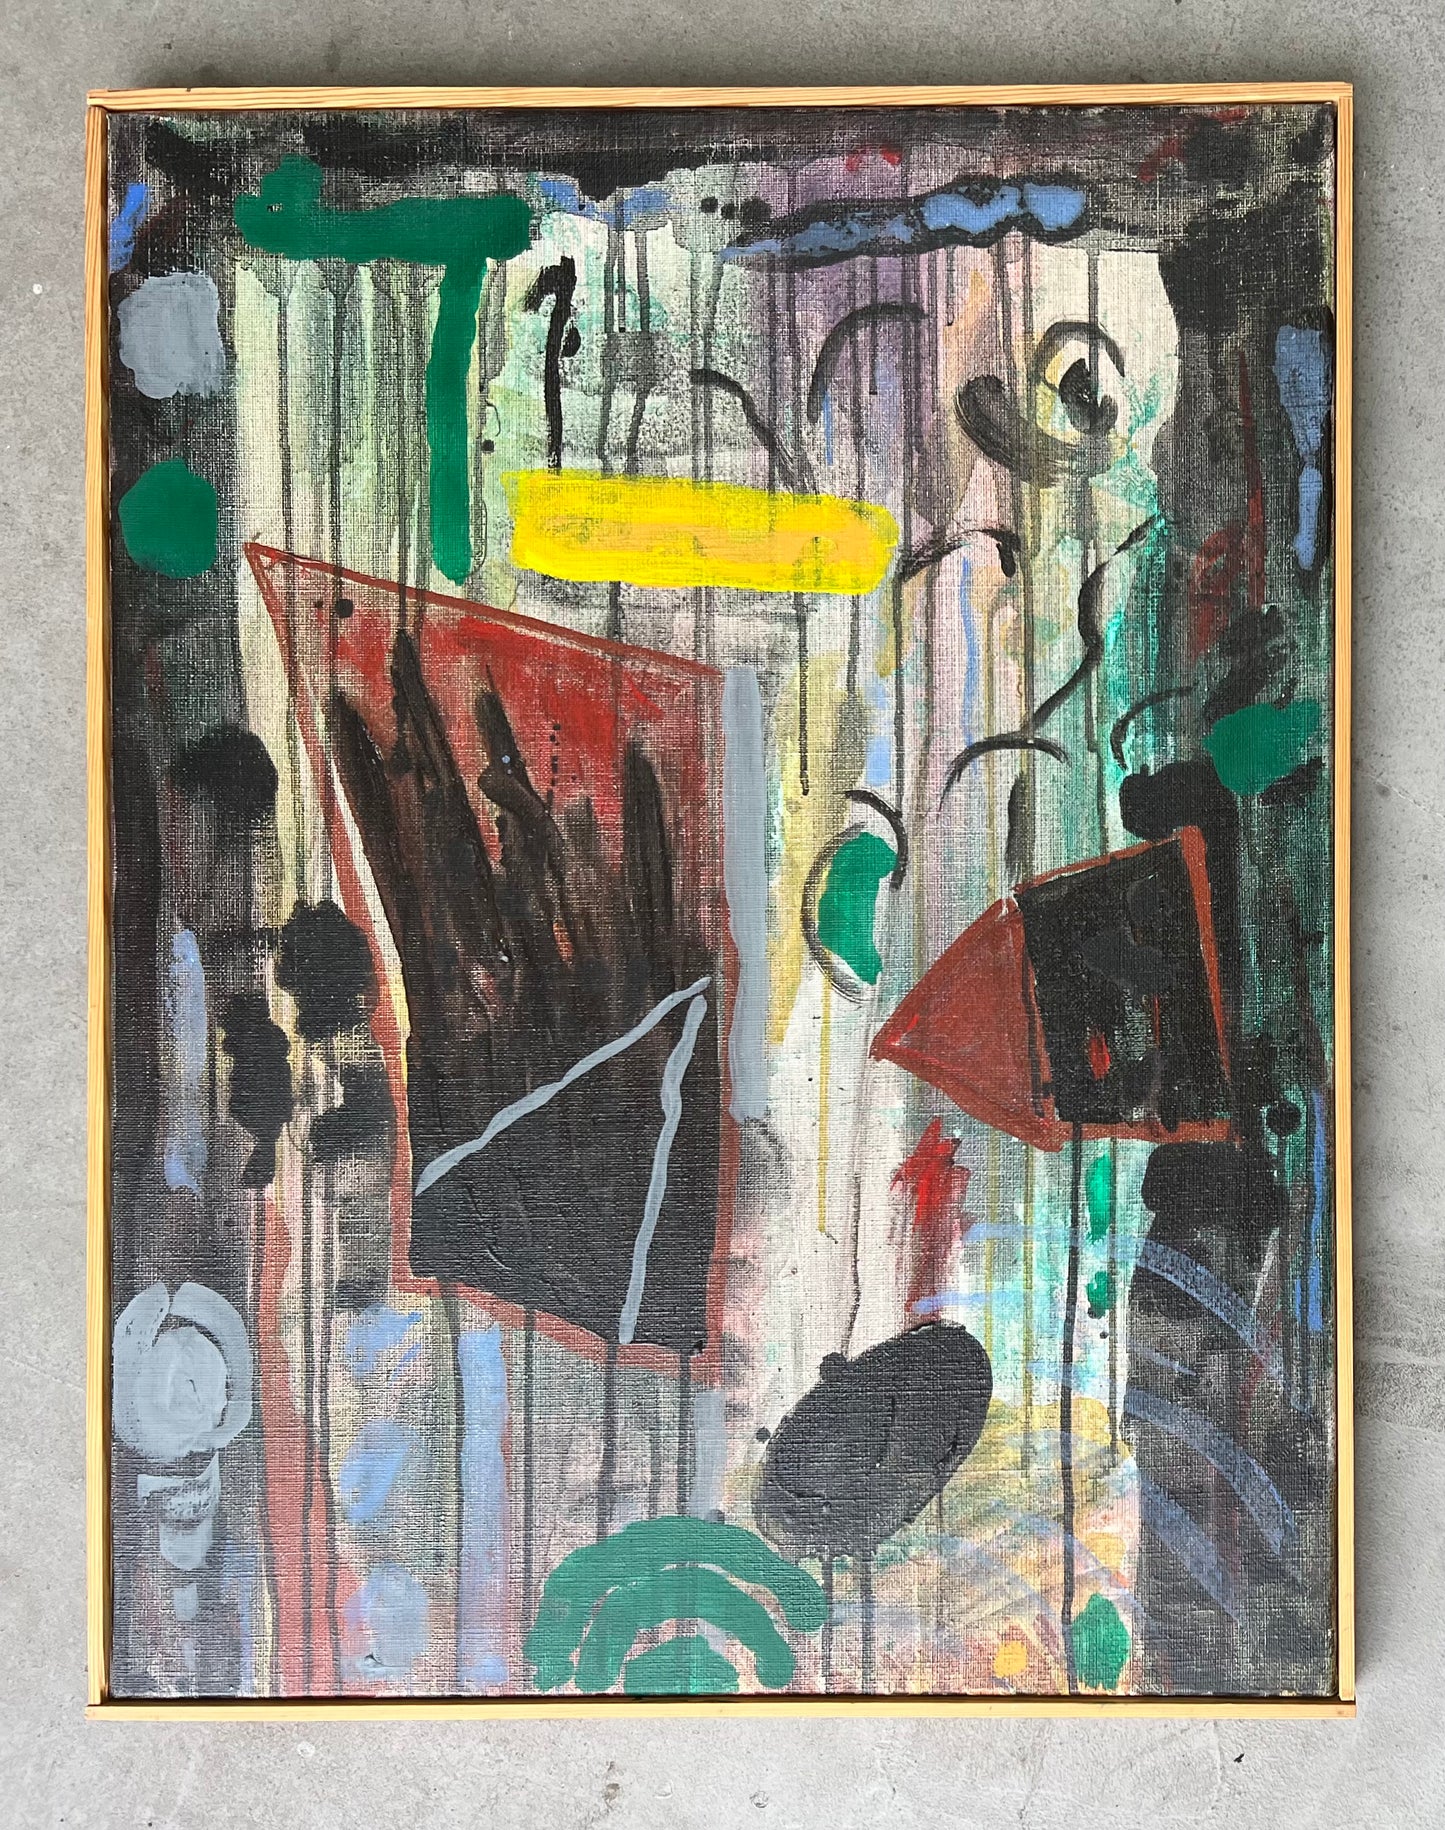 Bent Karl Jacobsen. "Landscape fragment", 1998